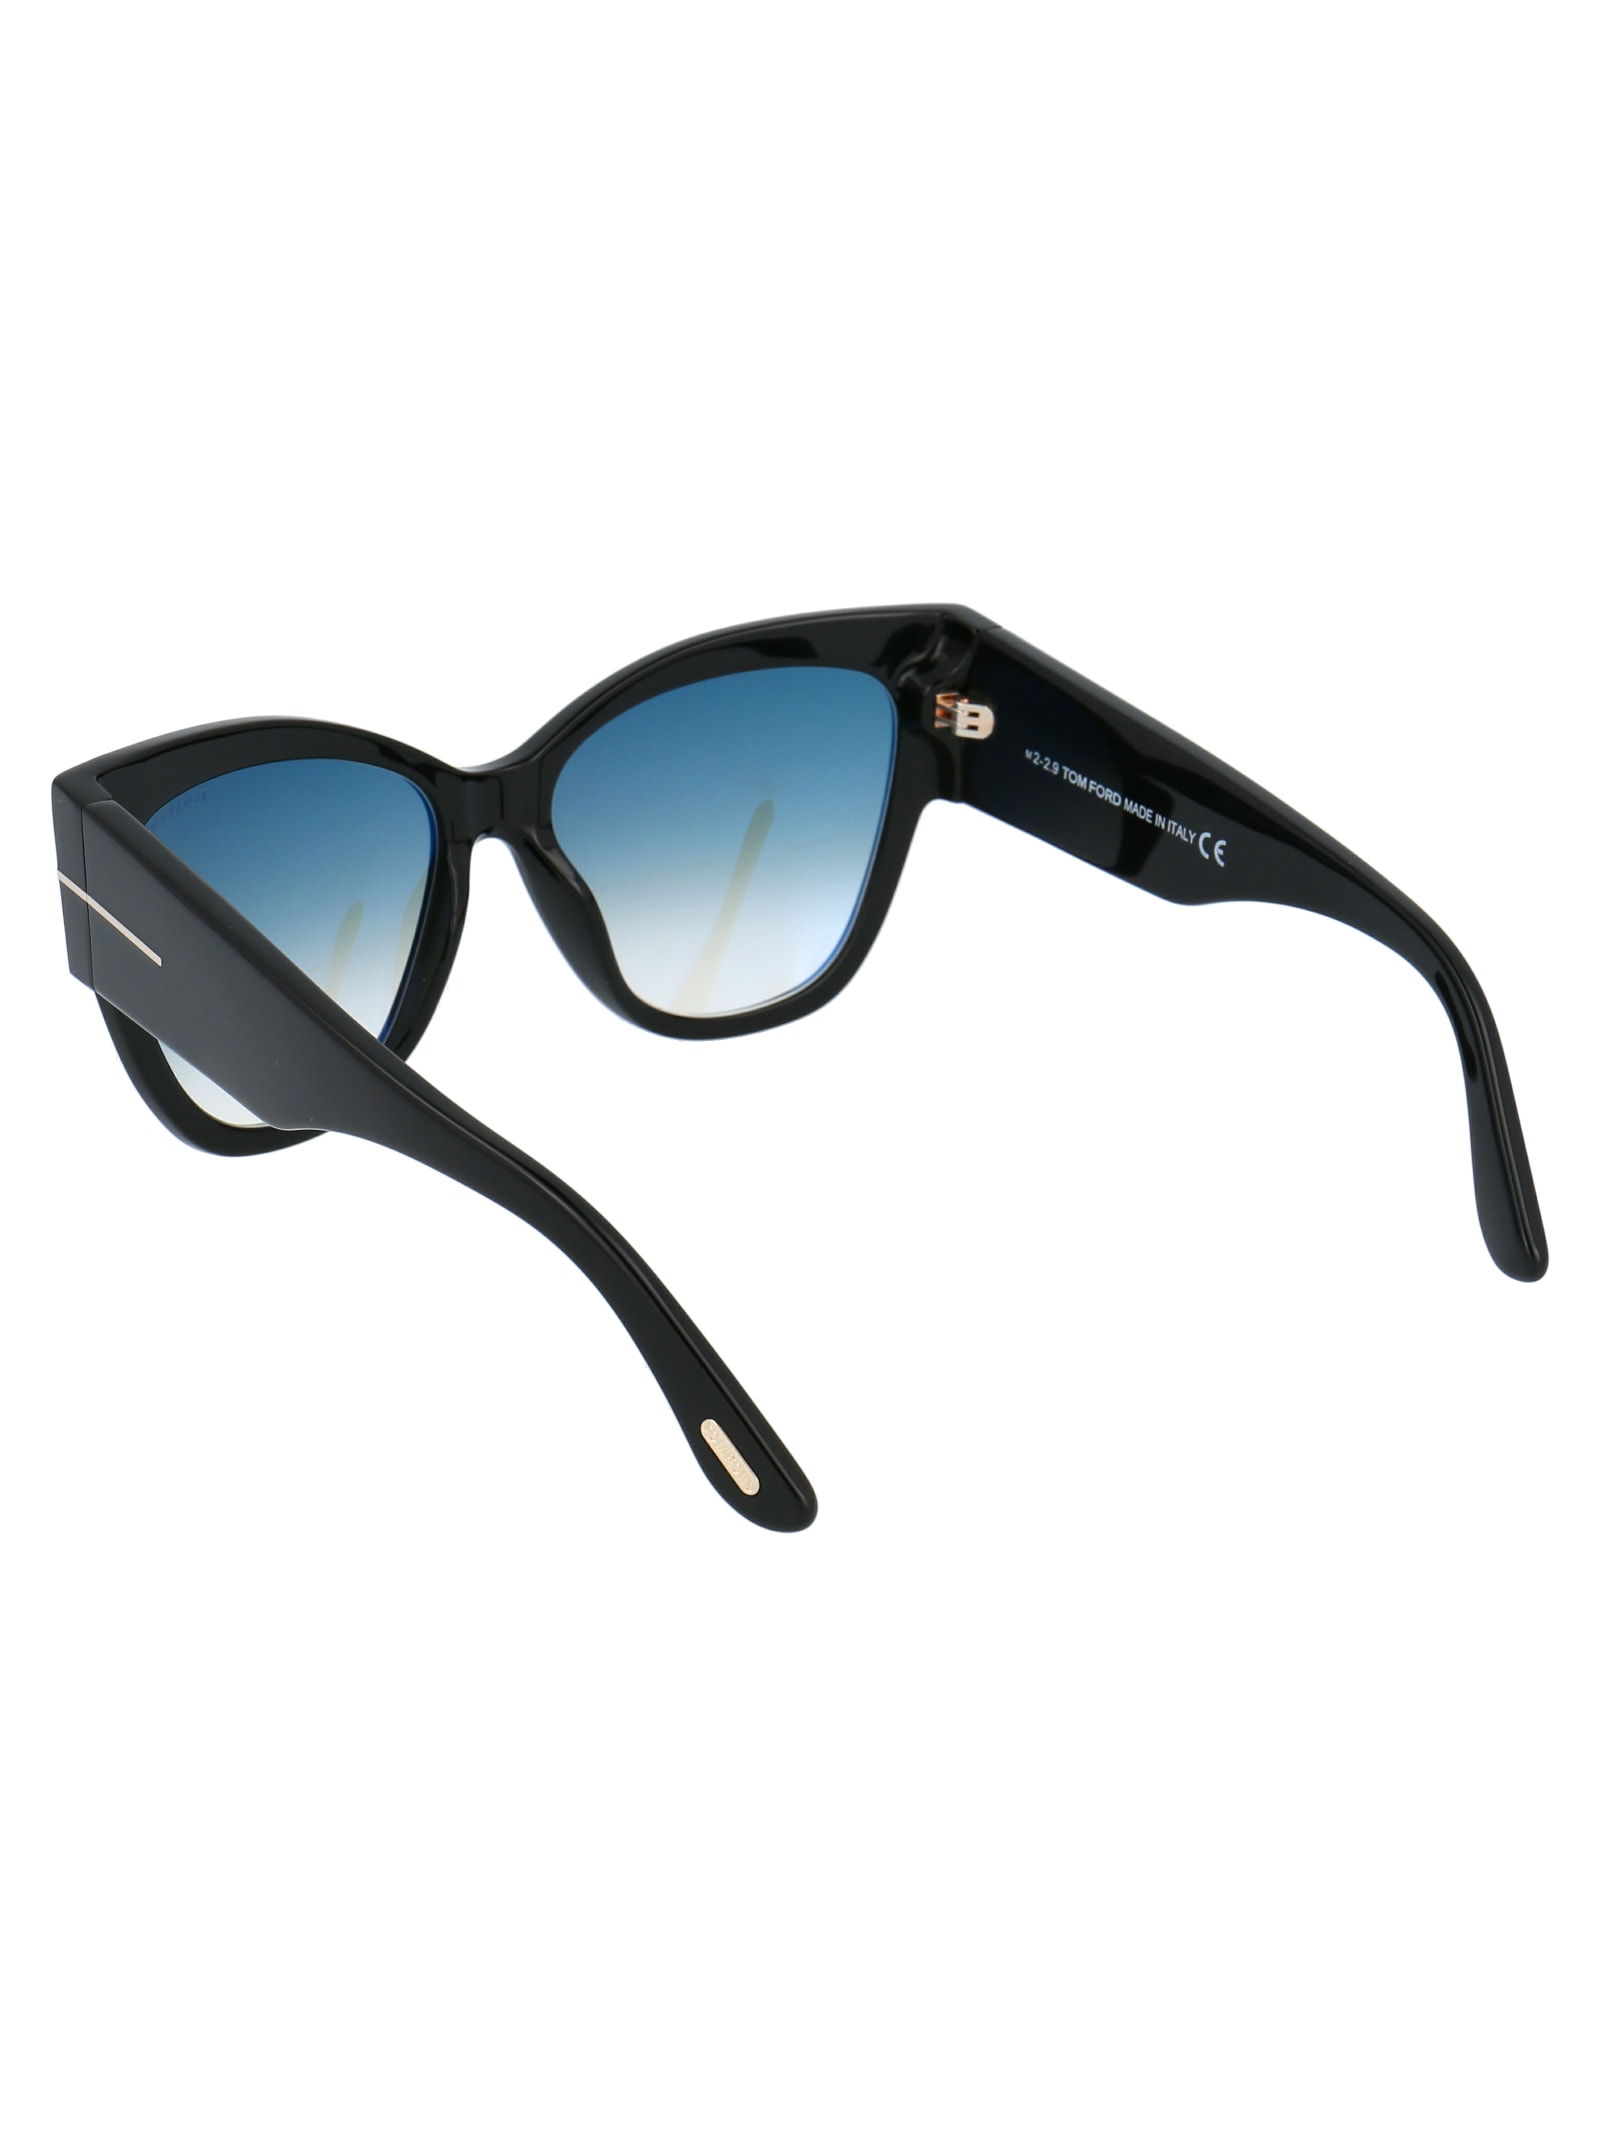 Shop Tom Ford Anoushka Sunglasses In 01b Nero Lucido / Fumo Grad